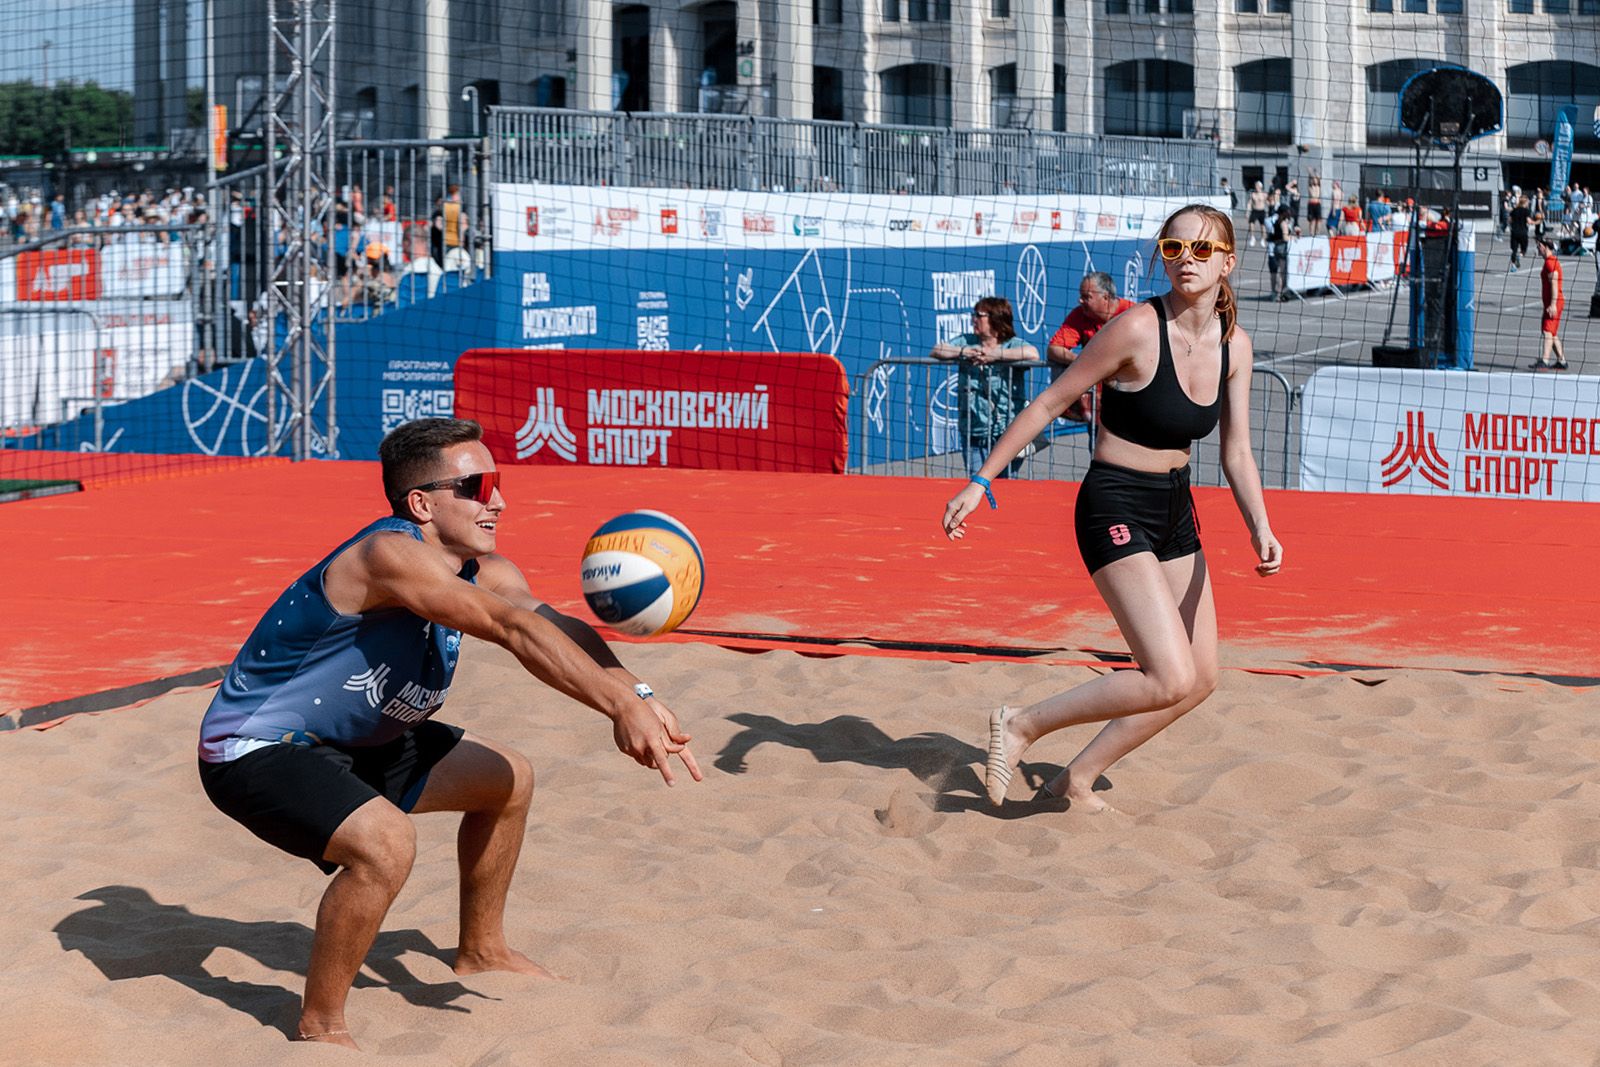 Бесплатное занятие по волейболу состоится 4 июля в Обручевском районе, фото